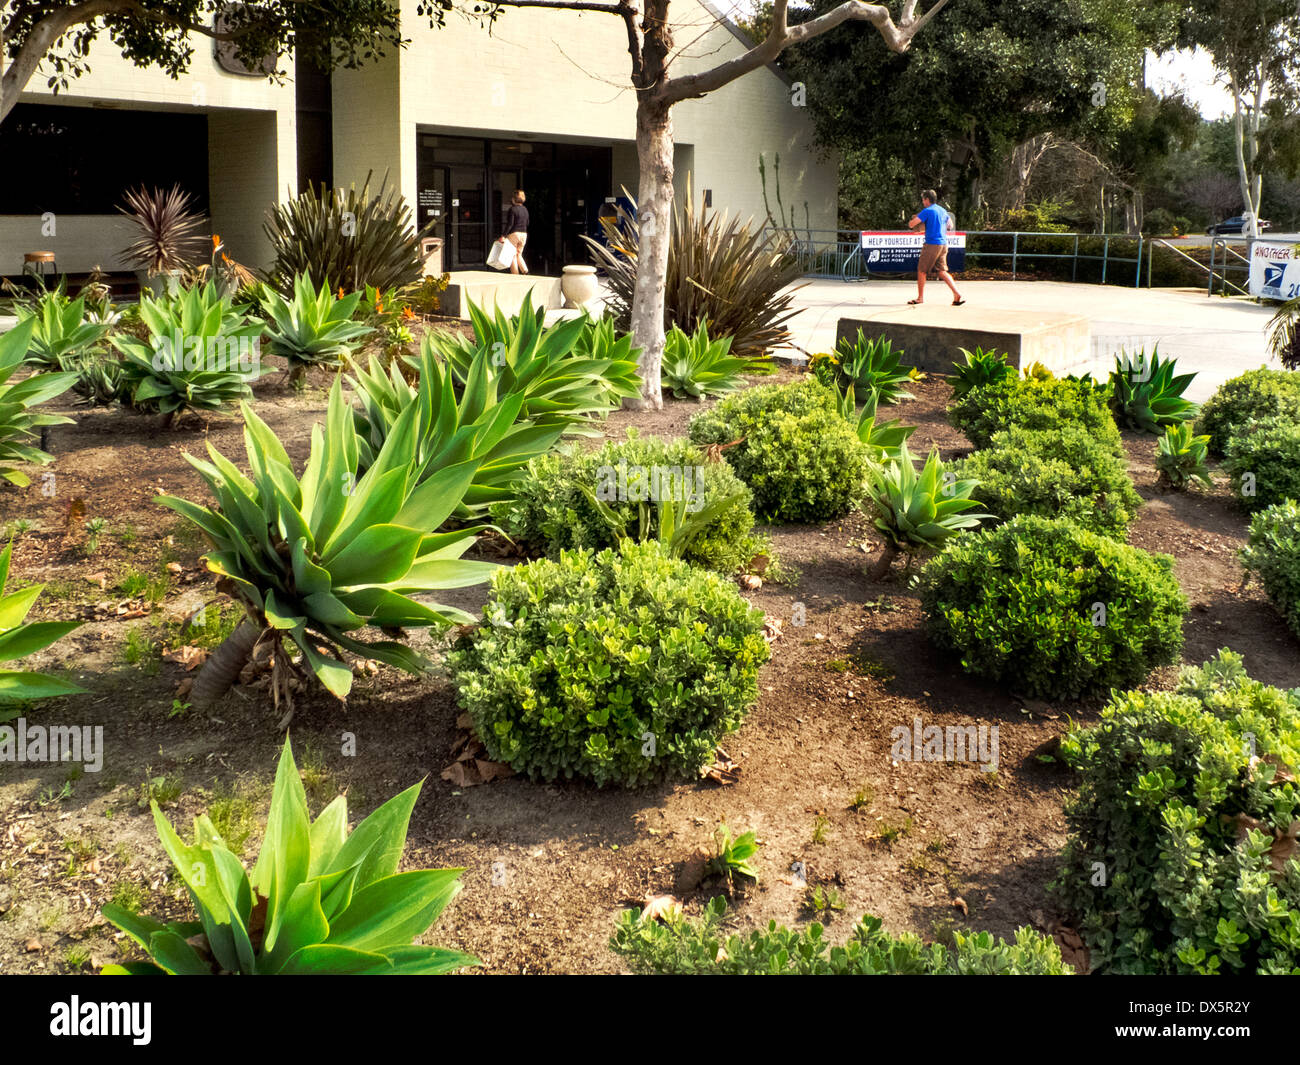 Un ufficio postale in Laguna Niguel, CA, è circondata dalla siccità piante resistenti che non richiedono nessuna irrigazione. Nota succulente. Foto Stock